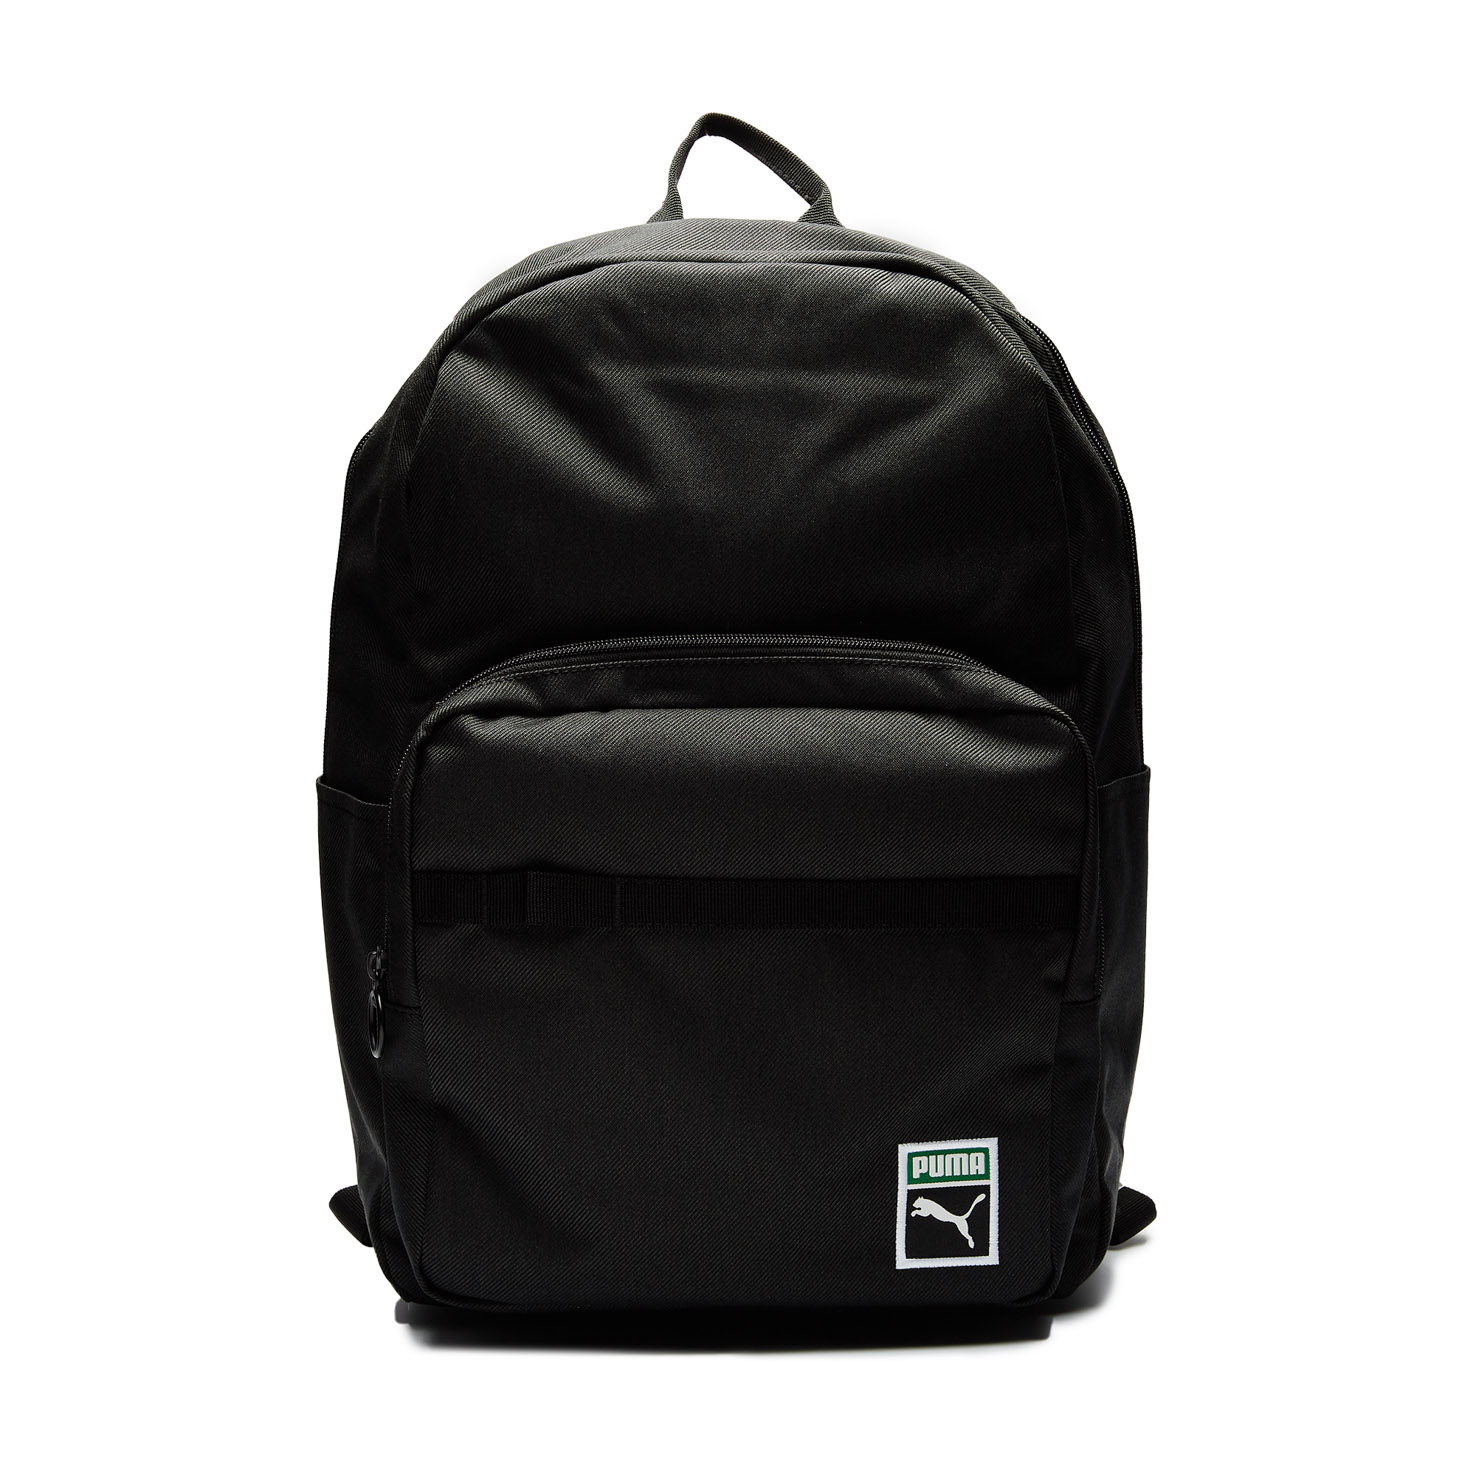 PUMA x PEANUTS Backpack PUMA, размер Один размер, цвет серый PM078009 - фото 1